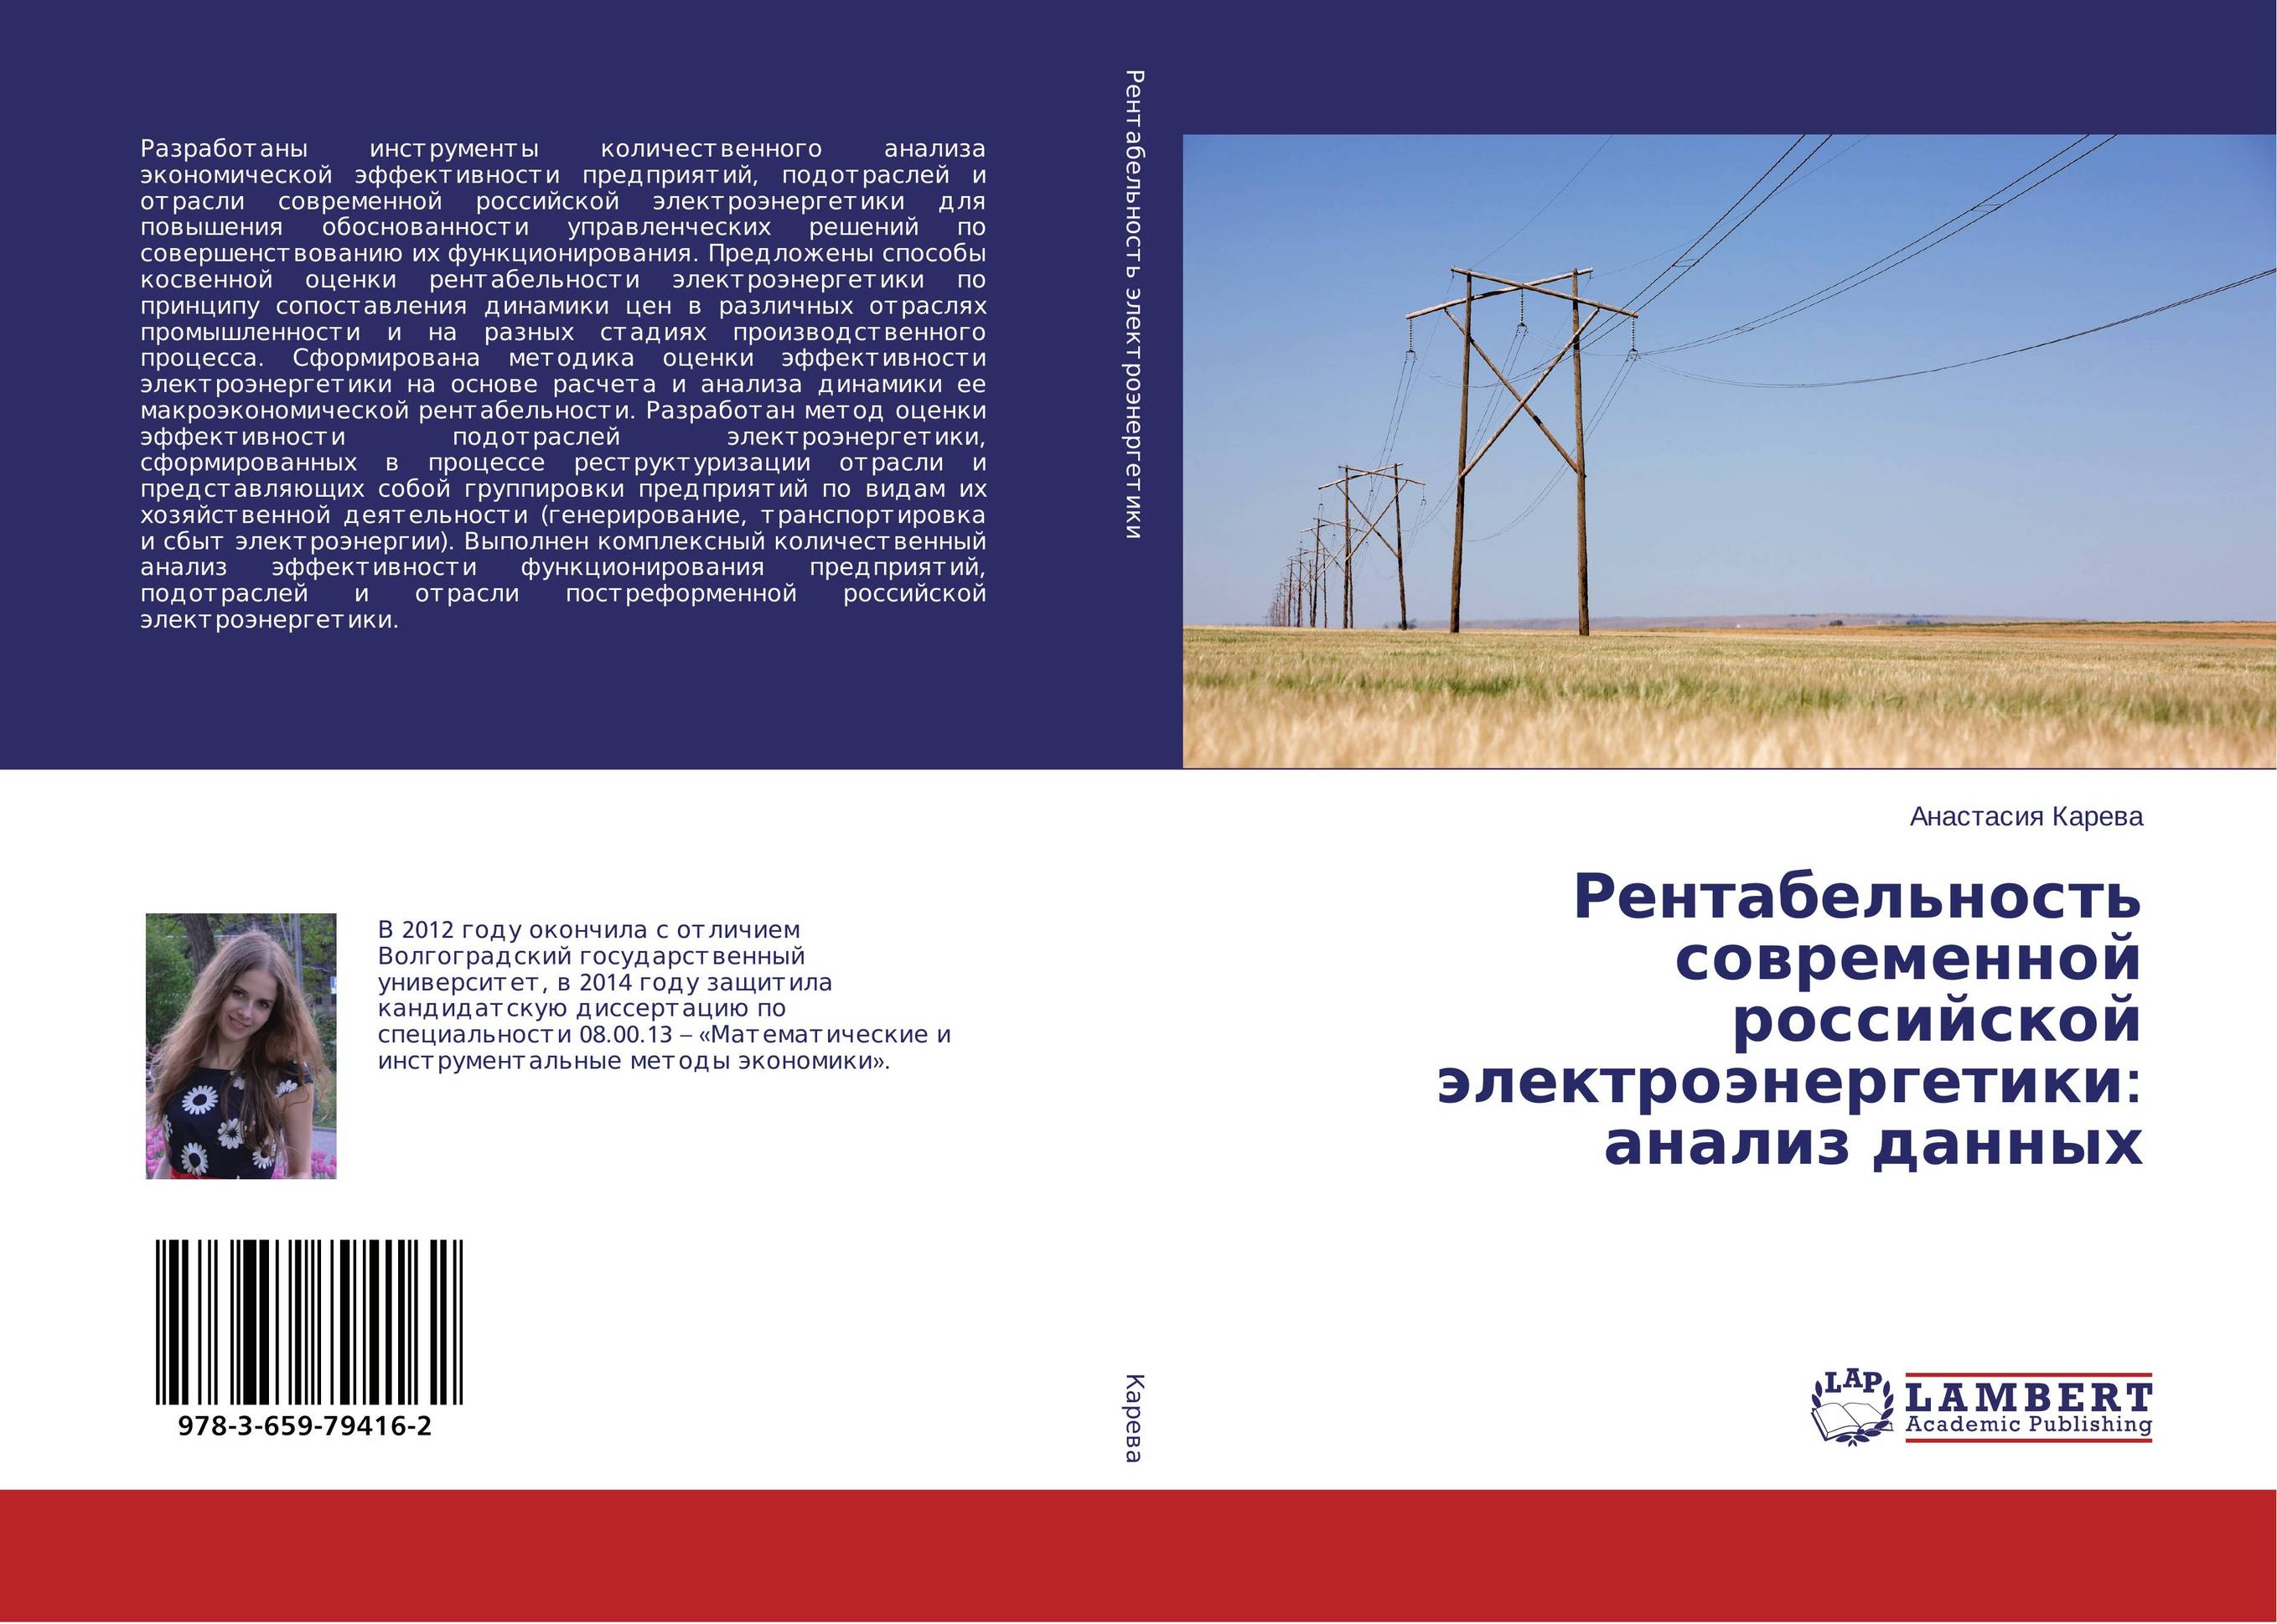 
        Рентабельность современной российской электроэнергетики: анализ данных..
      